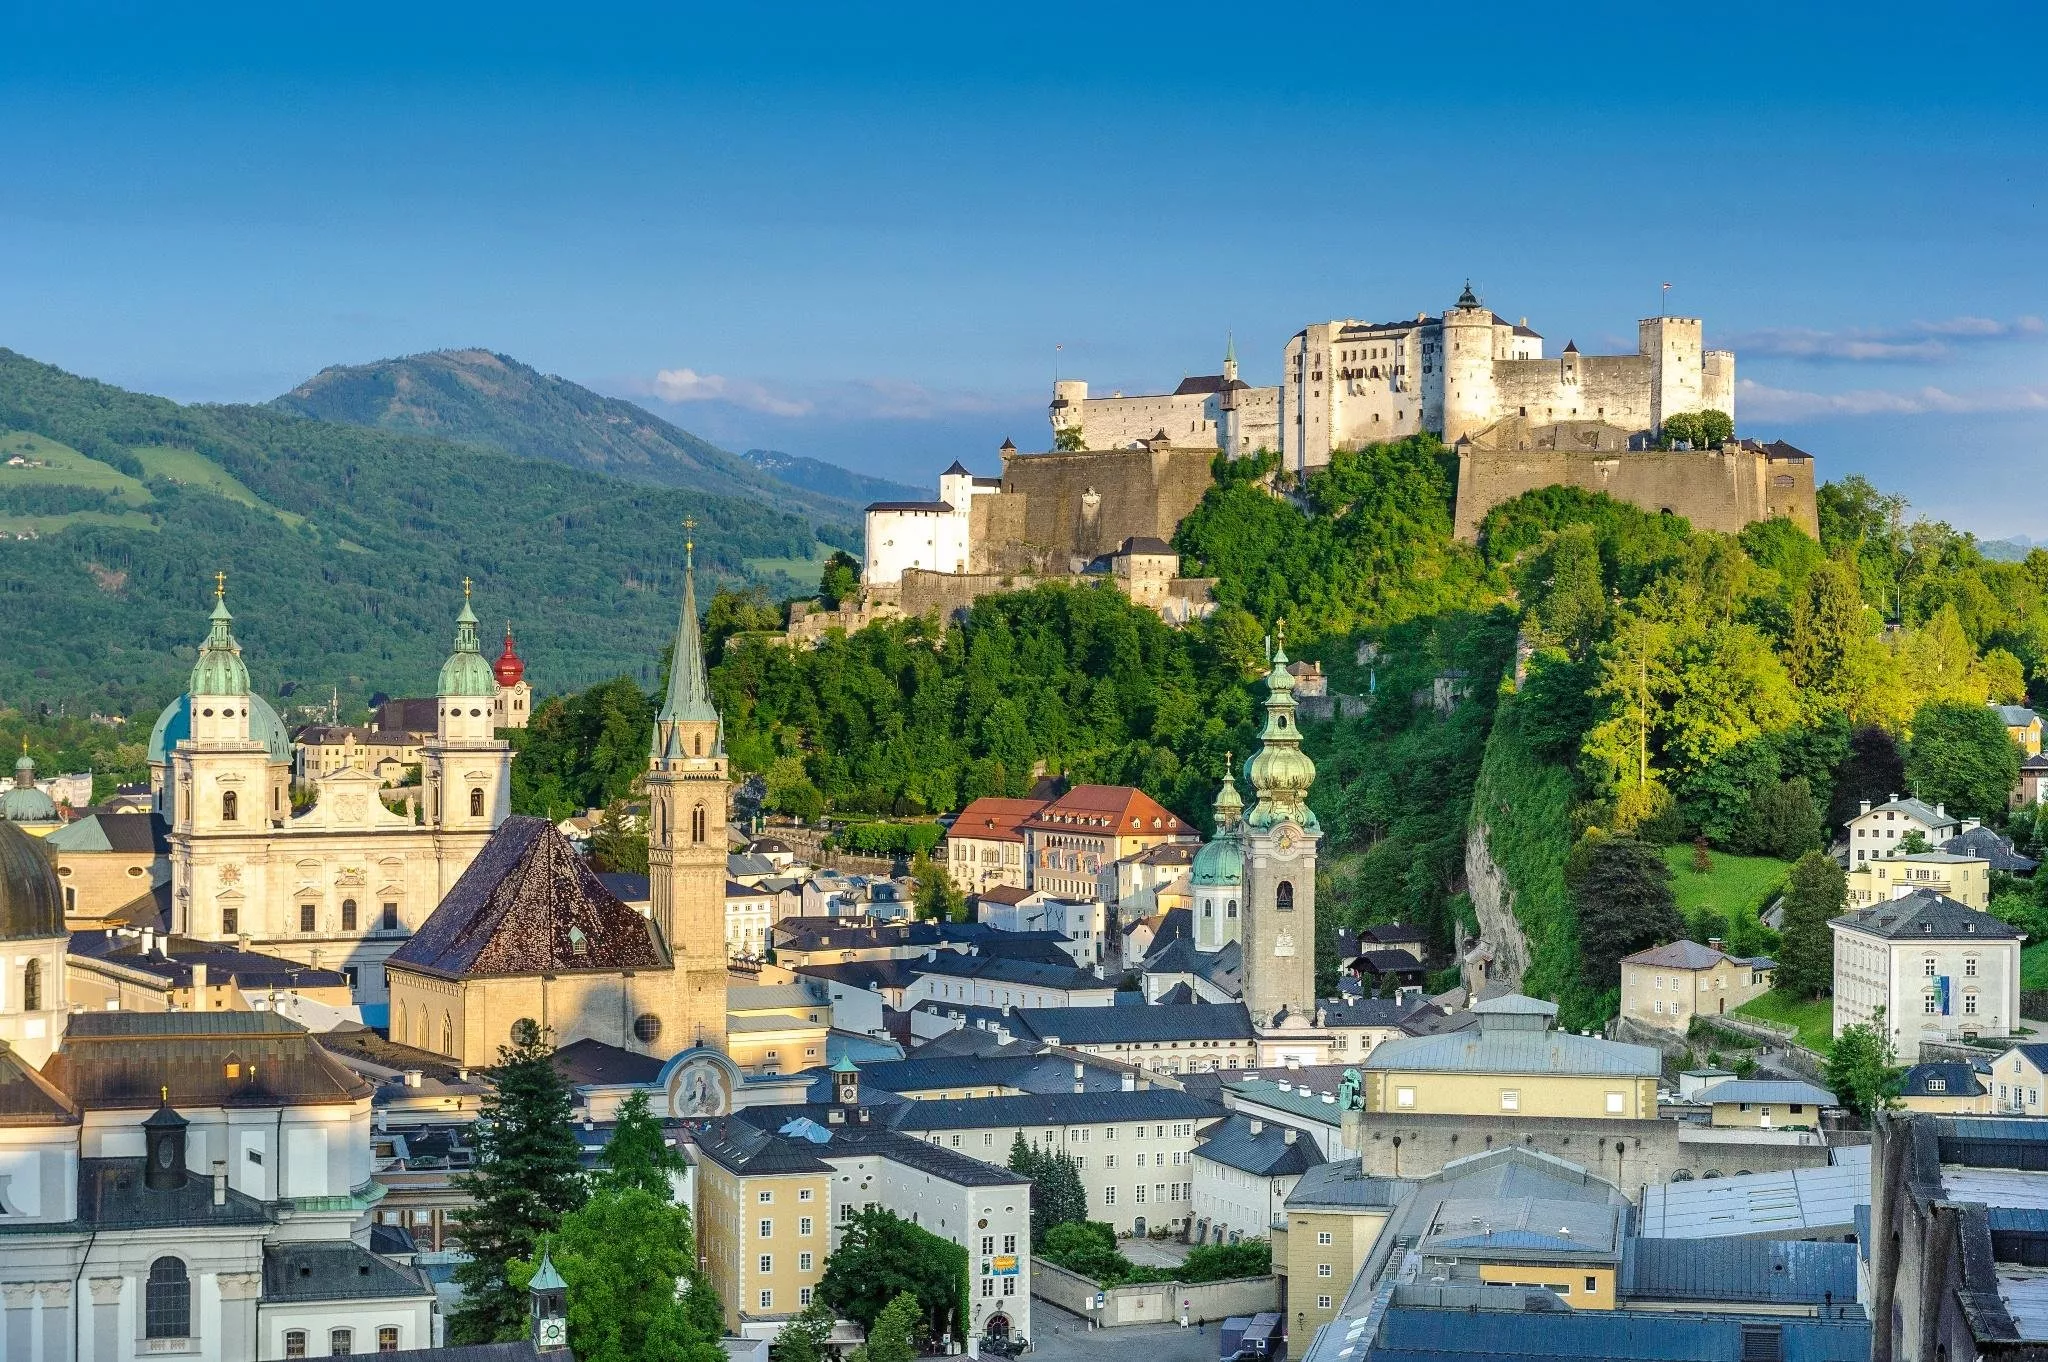 السياحة في النمسا: افضل 10 وجهات قد تجعلها البلد المفضل لديكِ